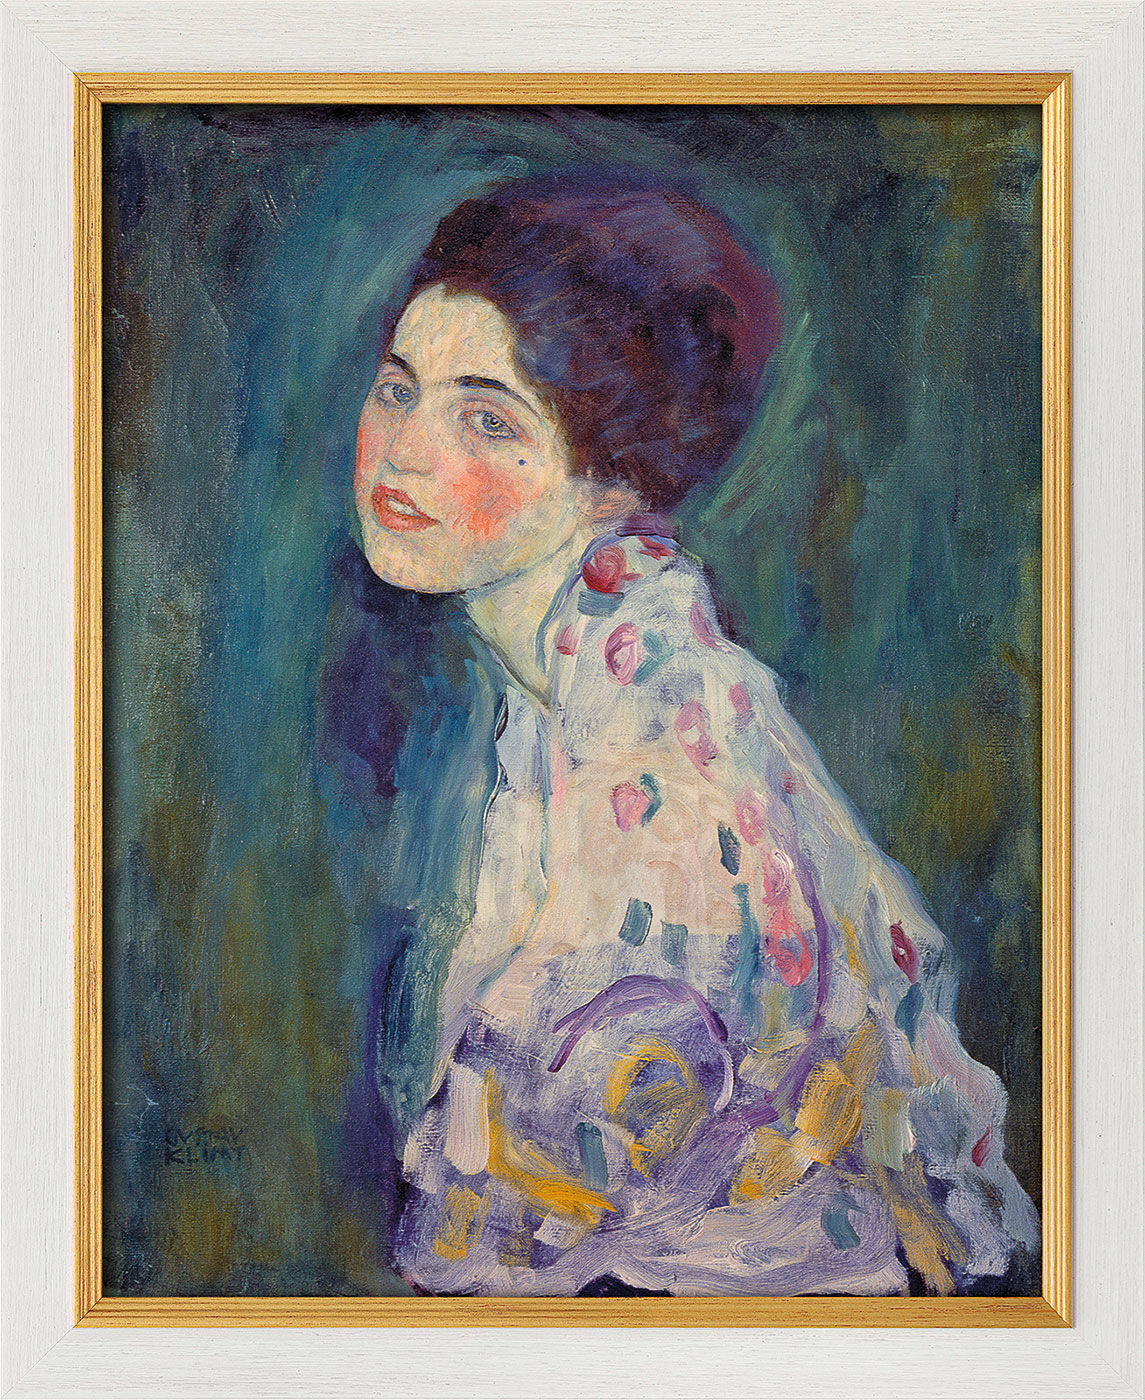 Tableau "Portrait d'une dame" (1916-18), encadré von Gustav Klimt